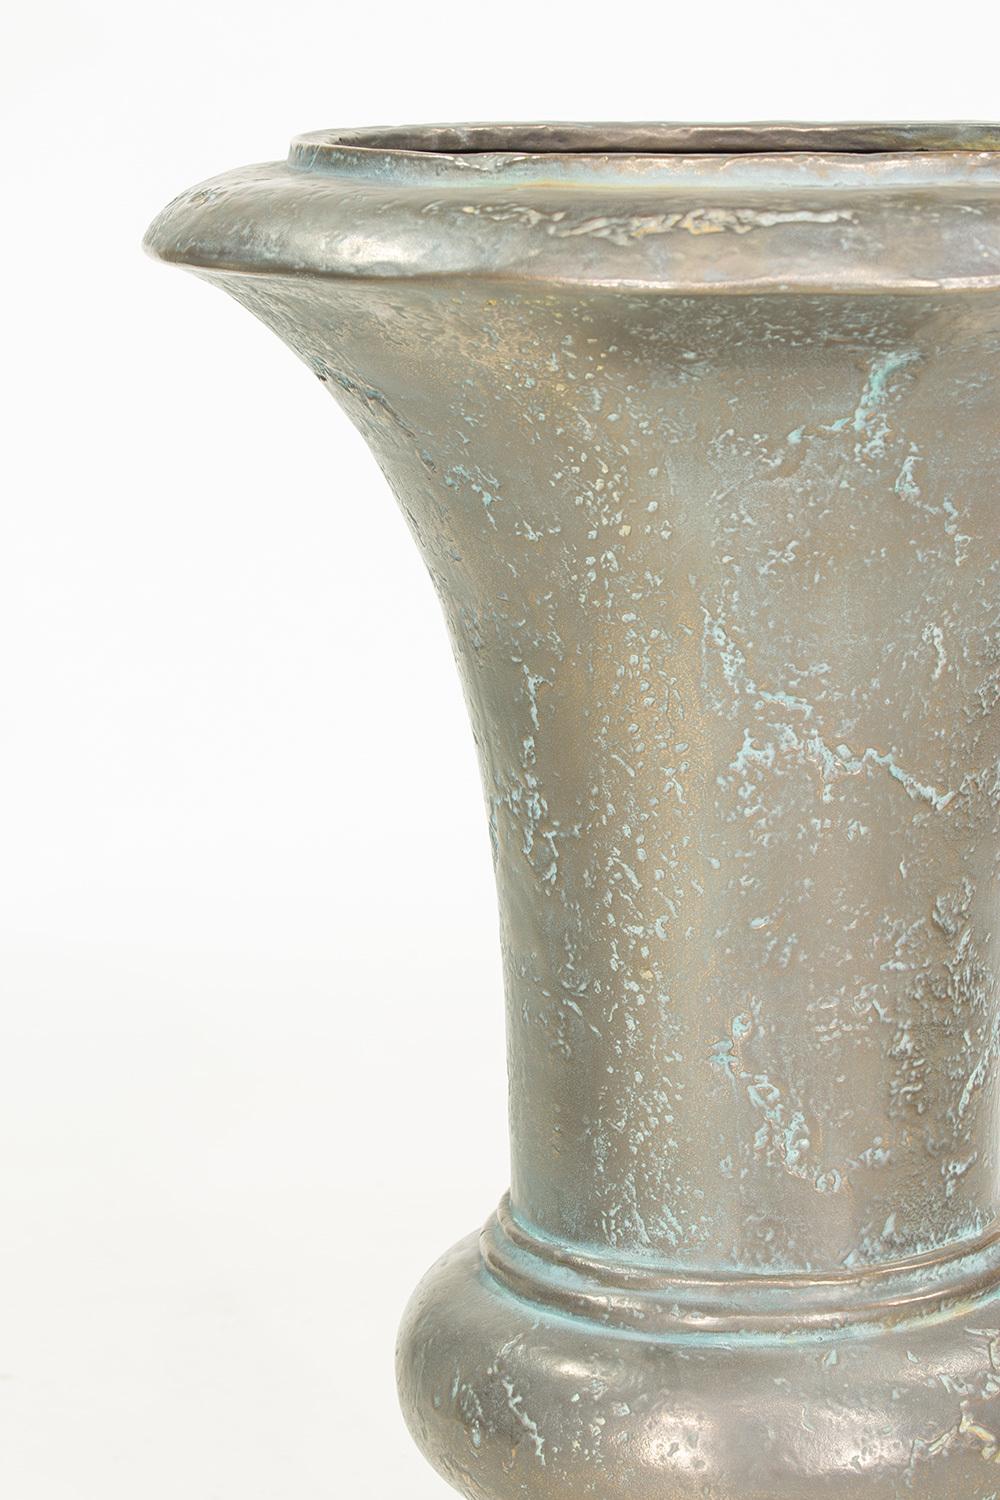 AMPHORA plant vase, 73/105 cm, verdigris-bronze